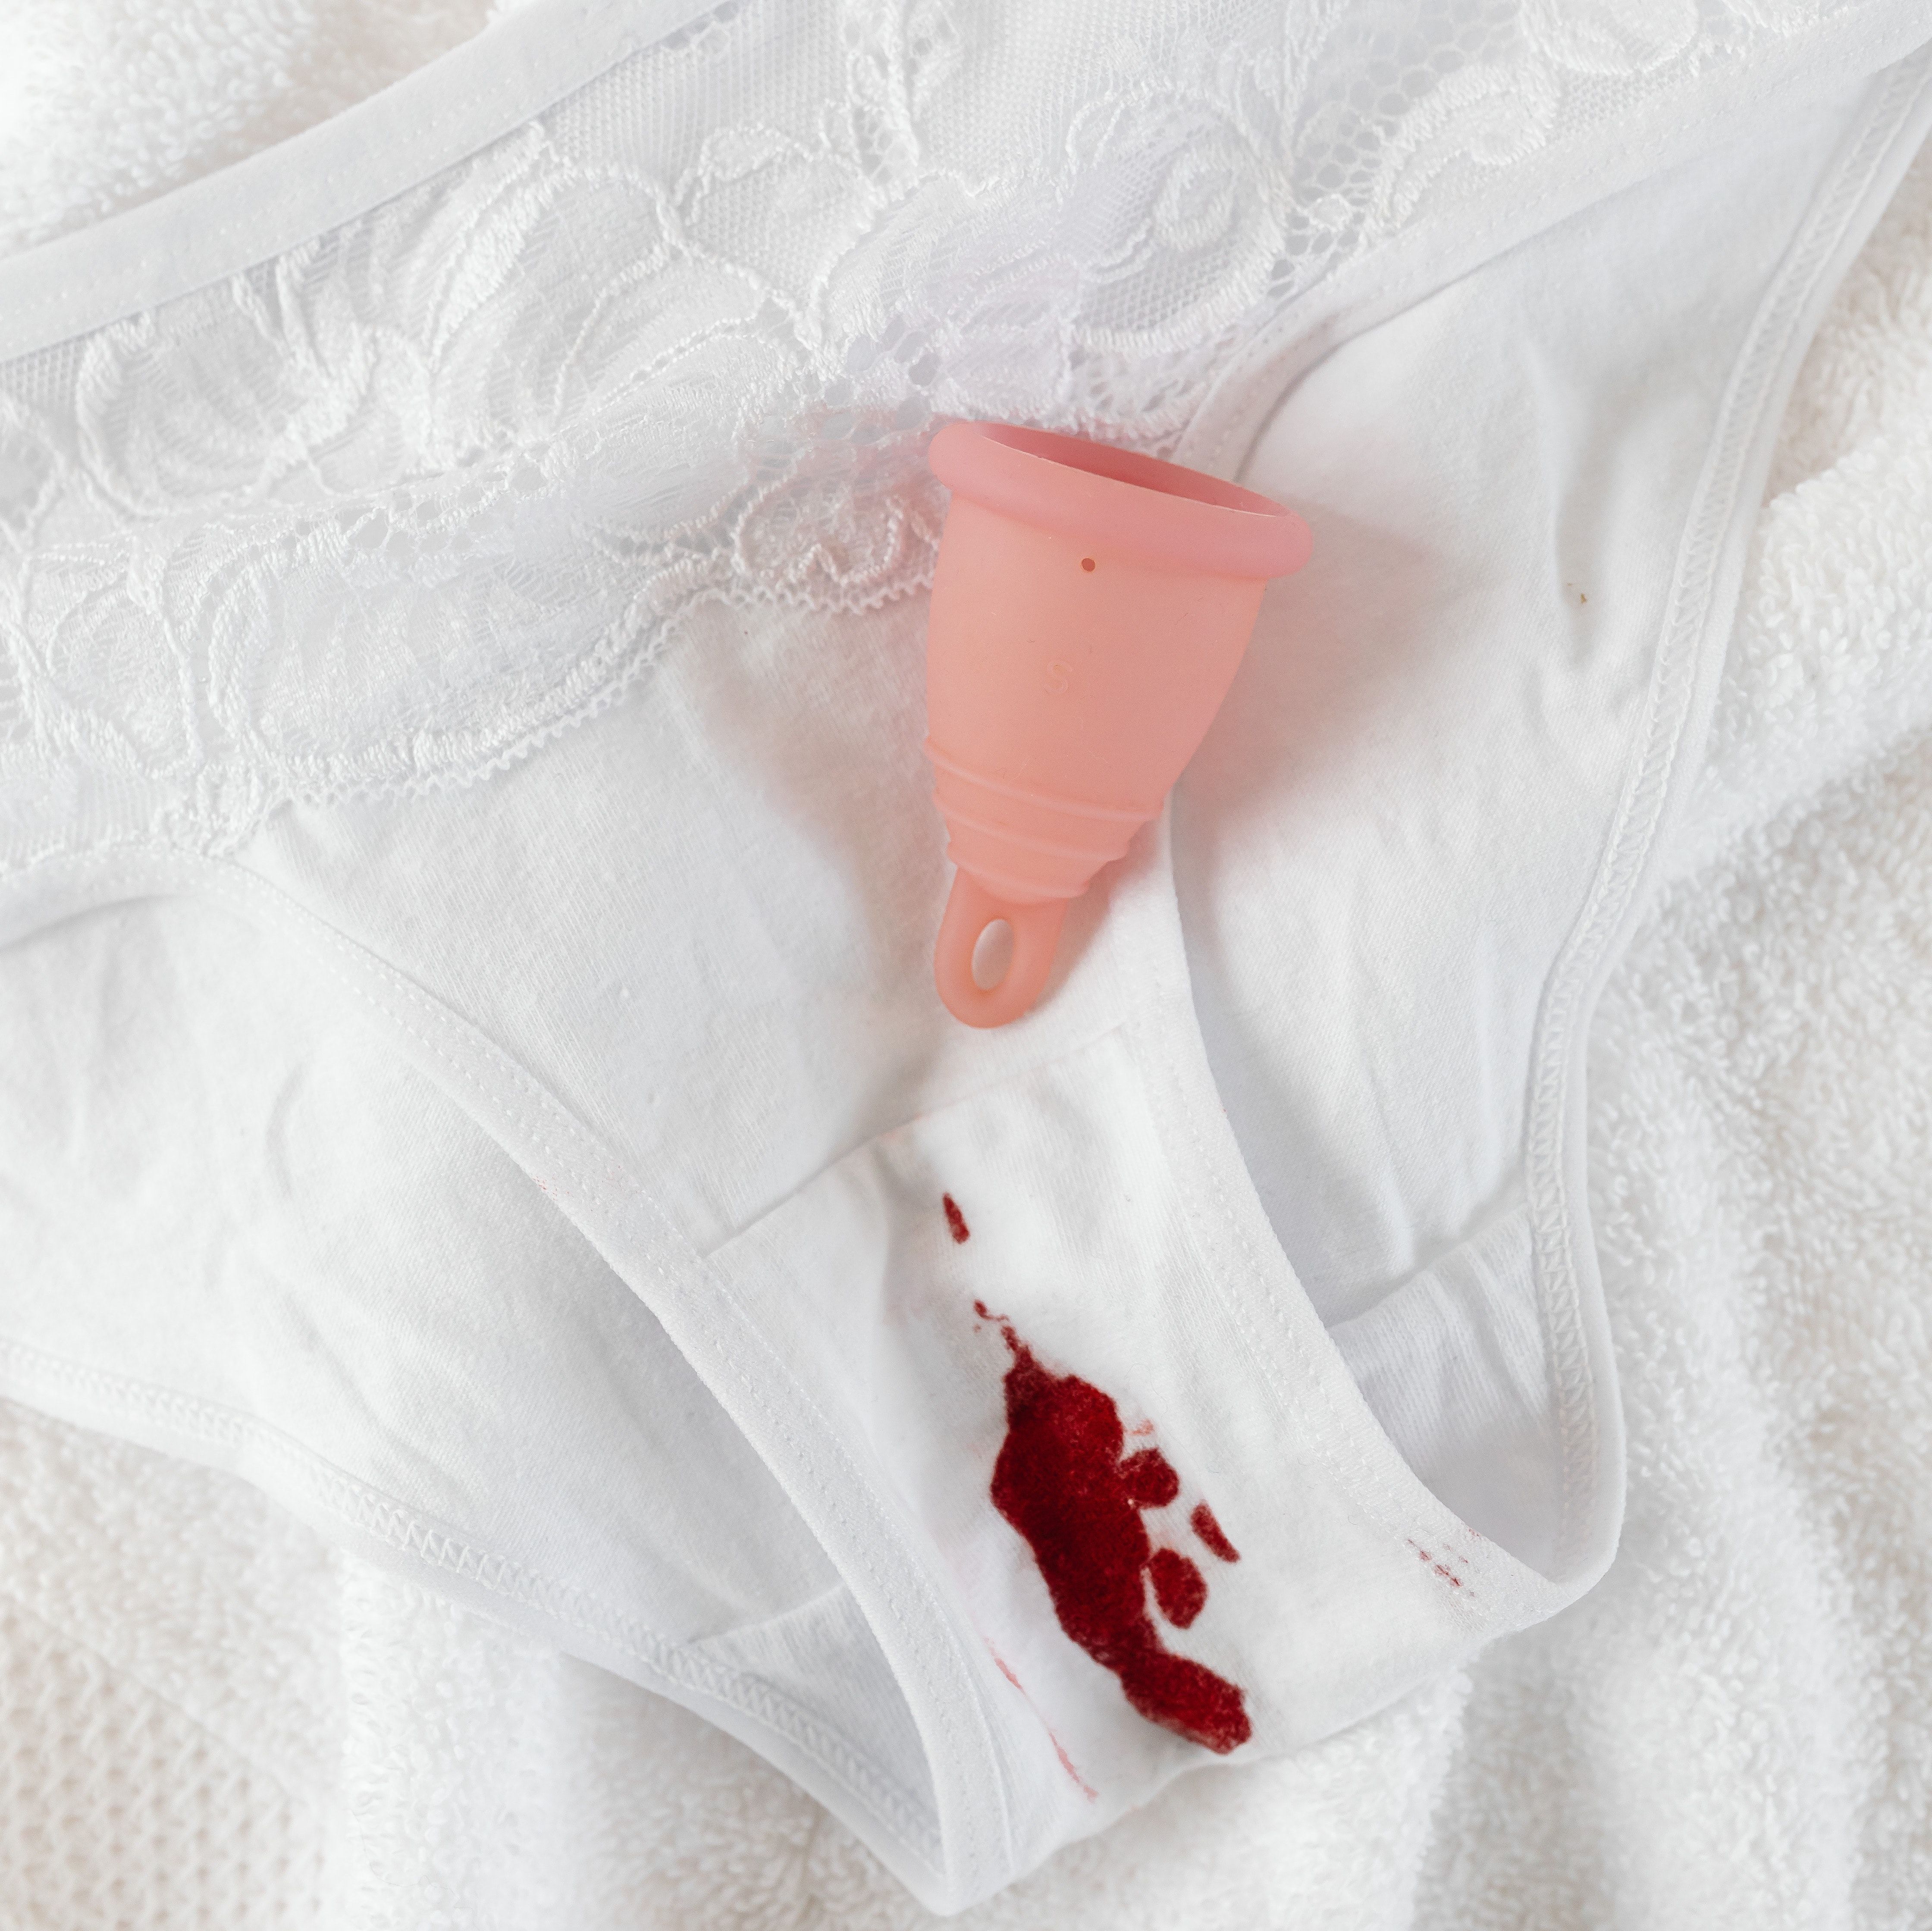 culotte de règle tachée et cup menstruelle